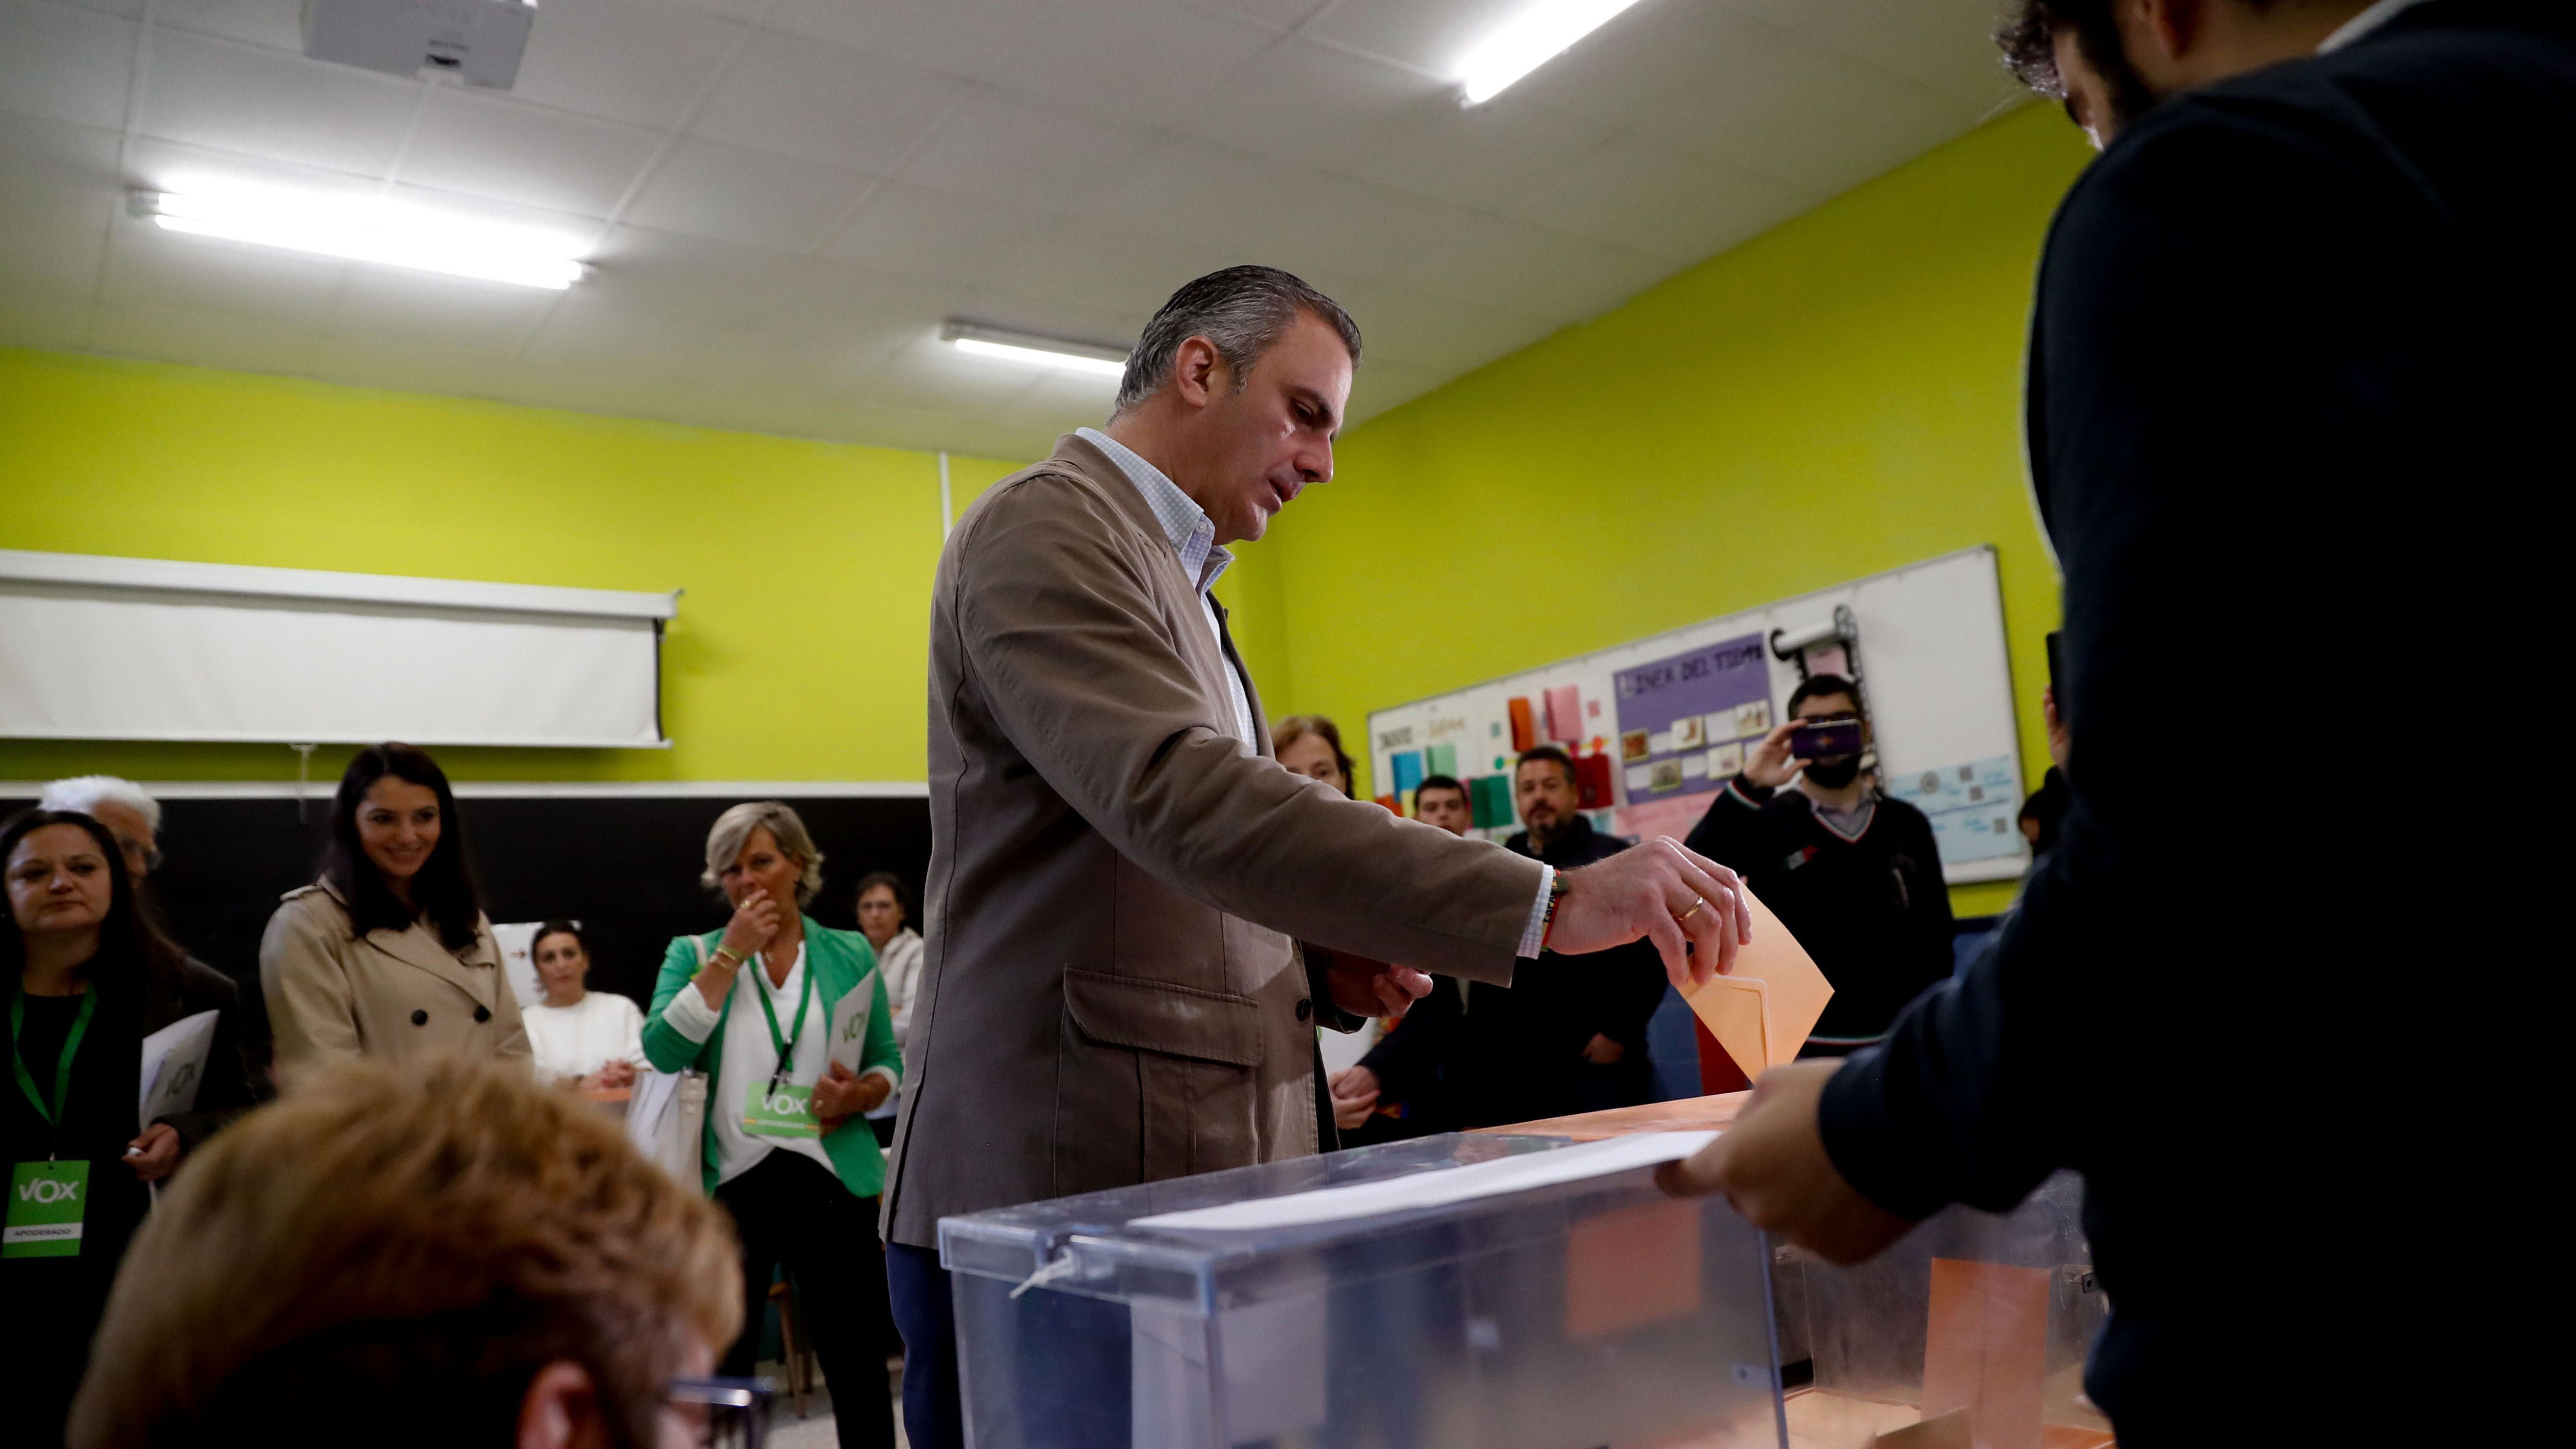 Ortega Smith defiende el valor del voto "frente a quienes no creen en la libertad ni en la democracia"